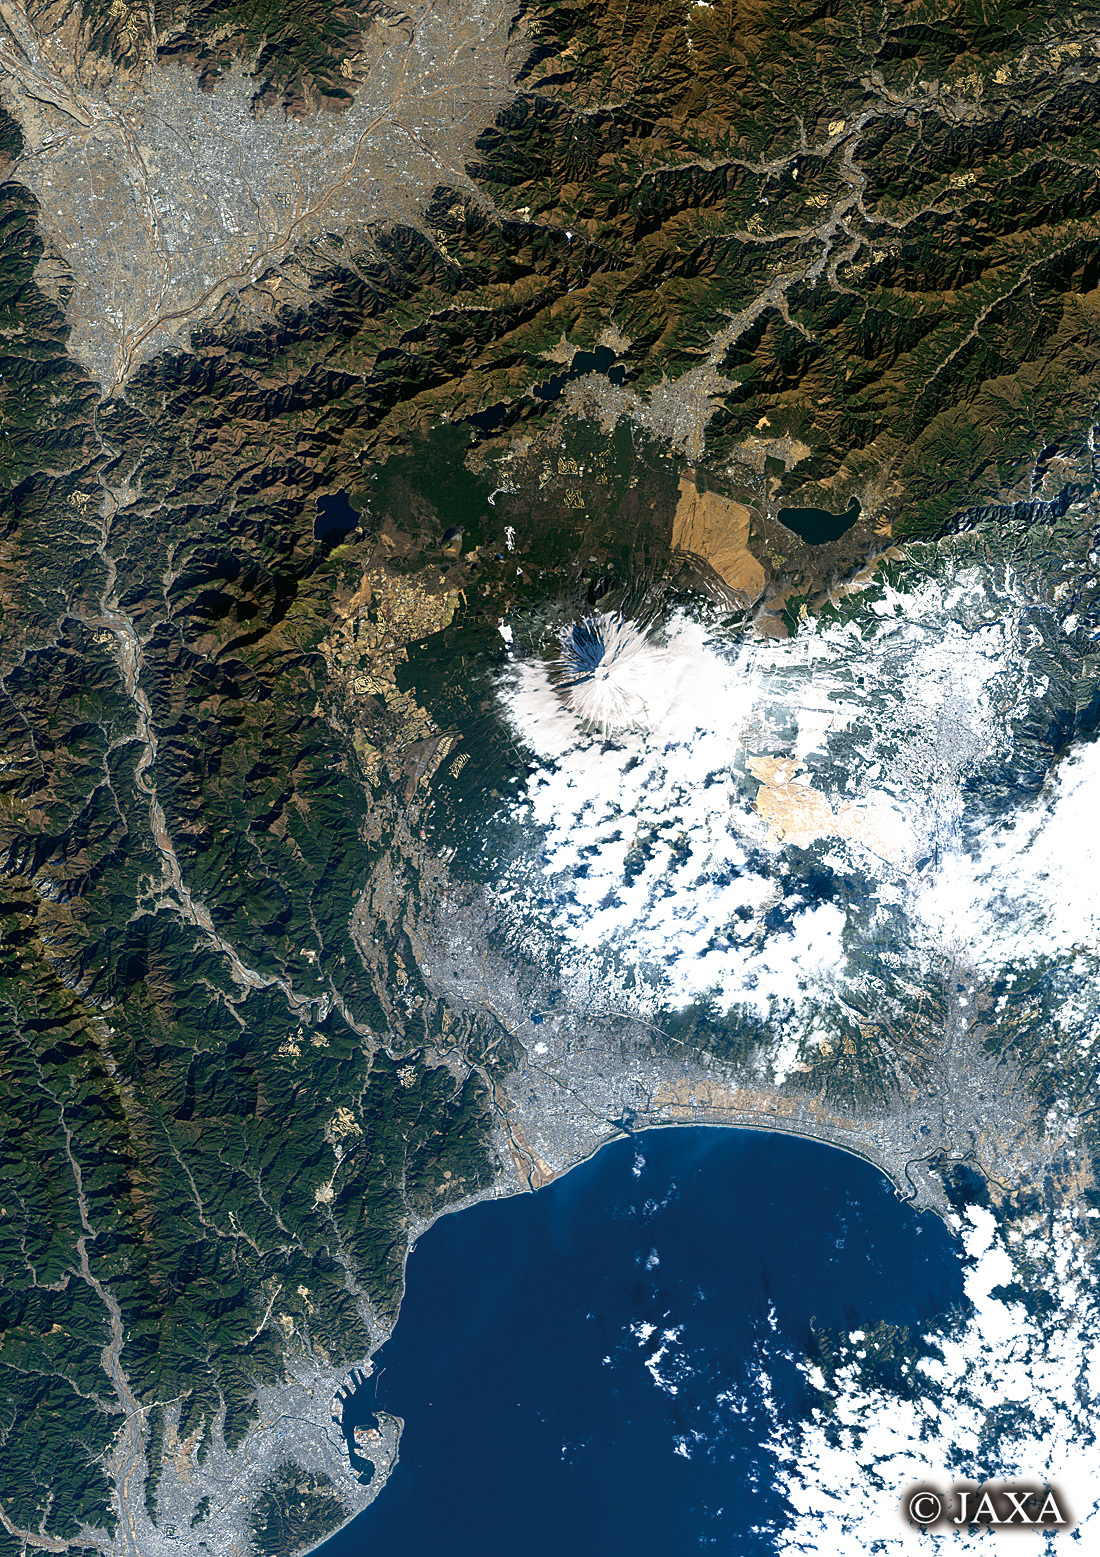 だいちから見た日本の都市 富士山:衛星画像